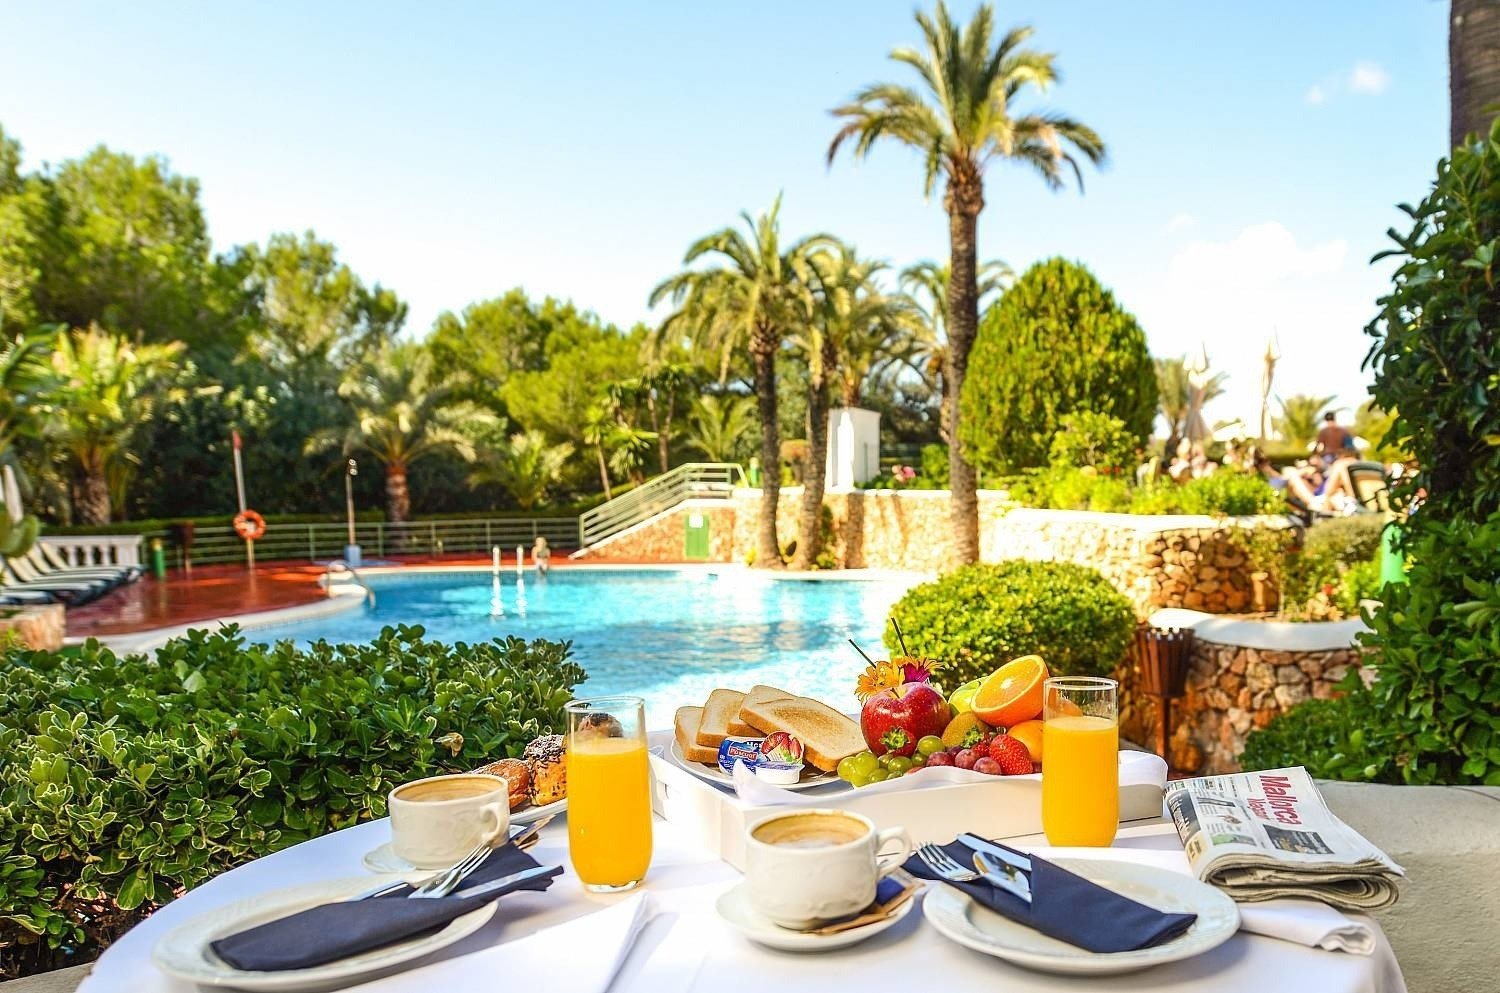 Detail eines Tisches in der Nähe des Außenpools des Hotels Ona Cala Pi auf Mallorca